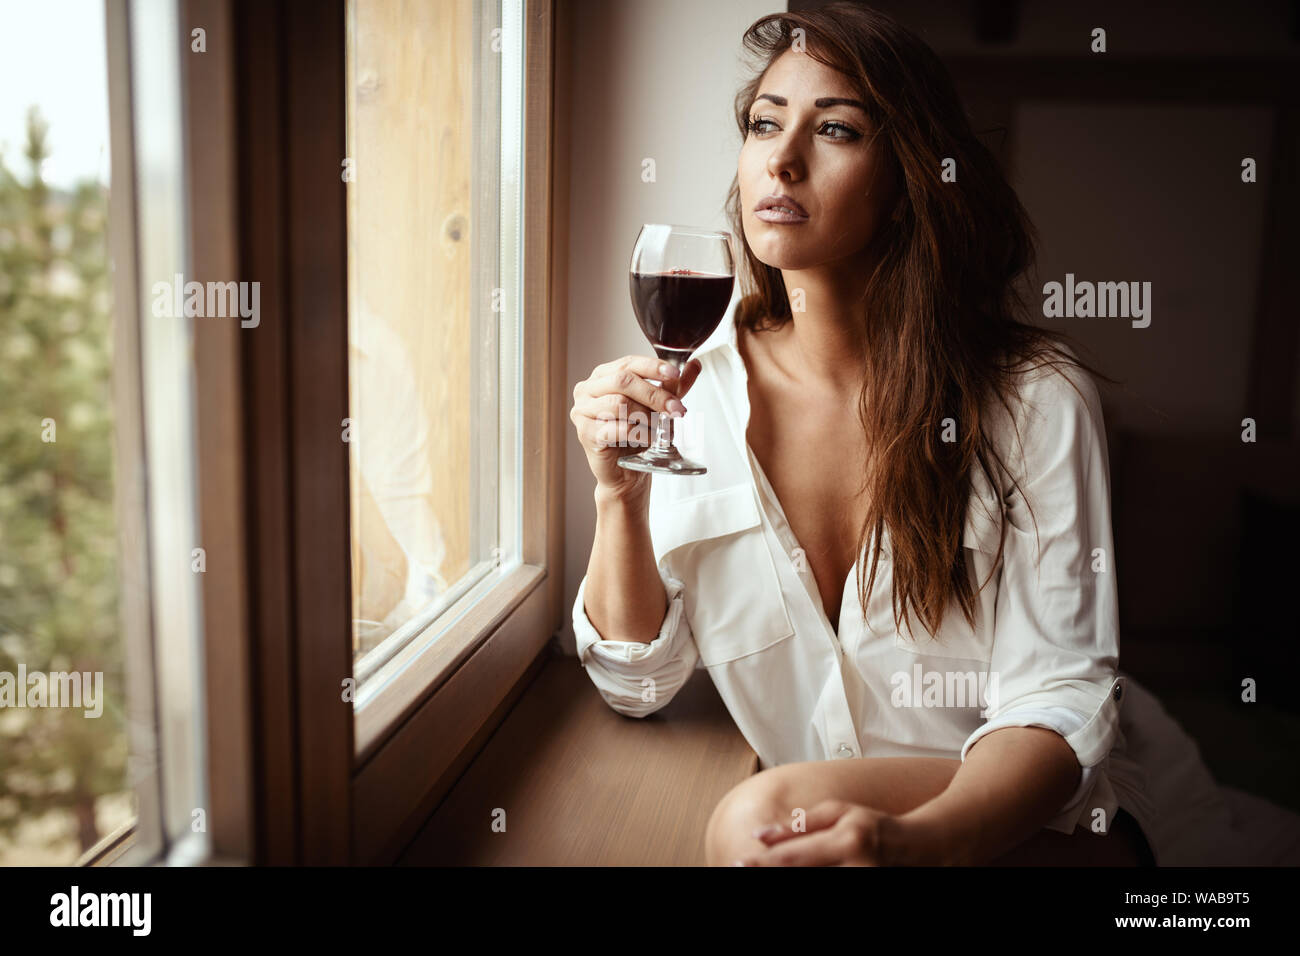 Junge traurige Frau trinkt Rotwein und schauen durch das Fenster, fühlt sich unglücklich und deprimiert, leiden unter Missbrauch, Belästigung oder Depressionen oder h Stockfoto